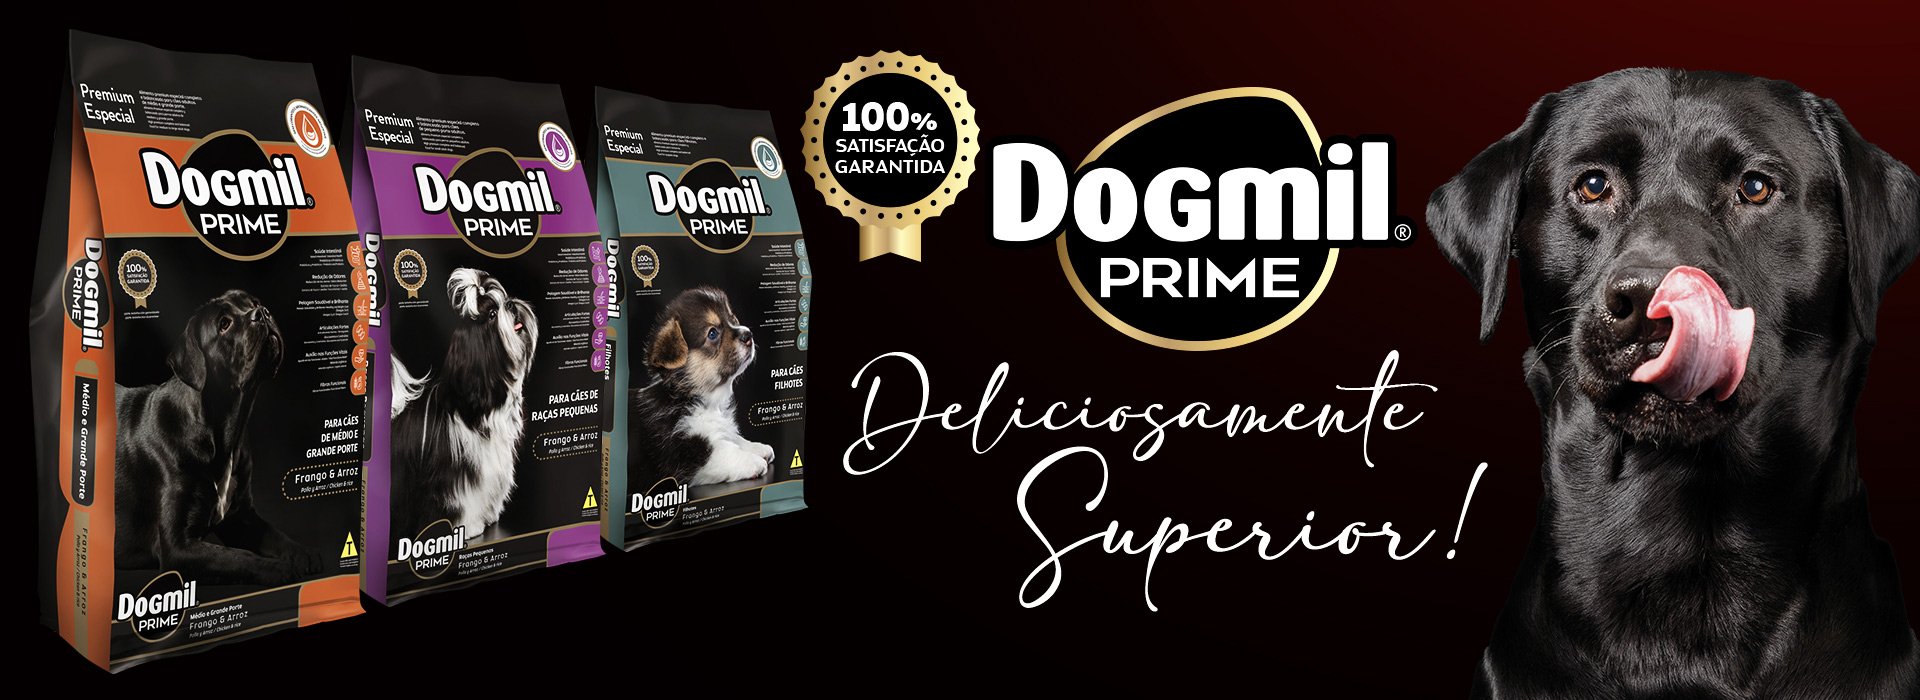 Dogmil Prime